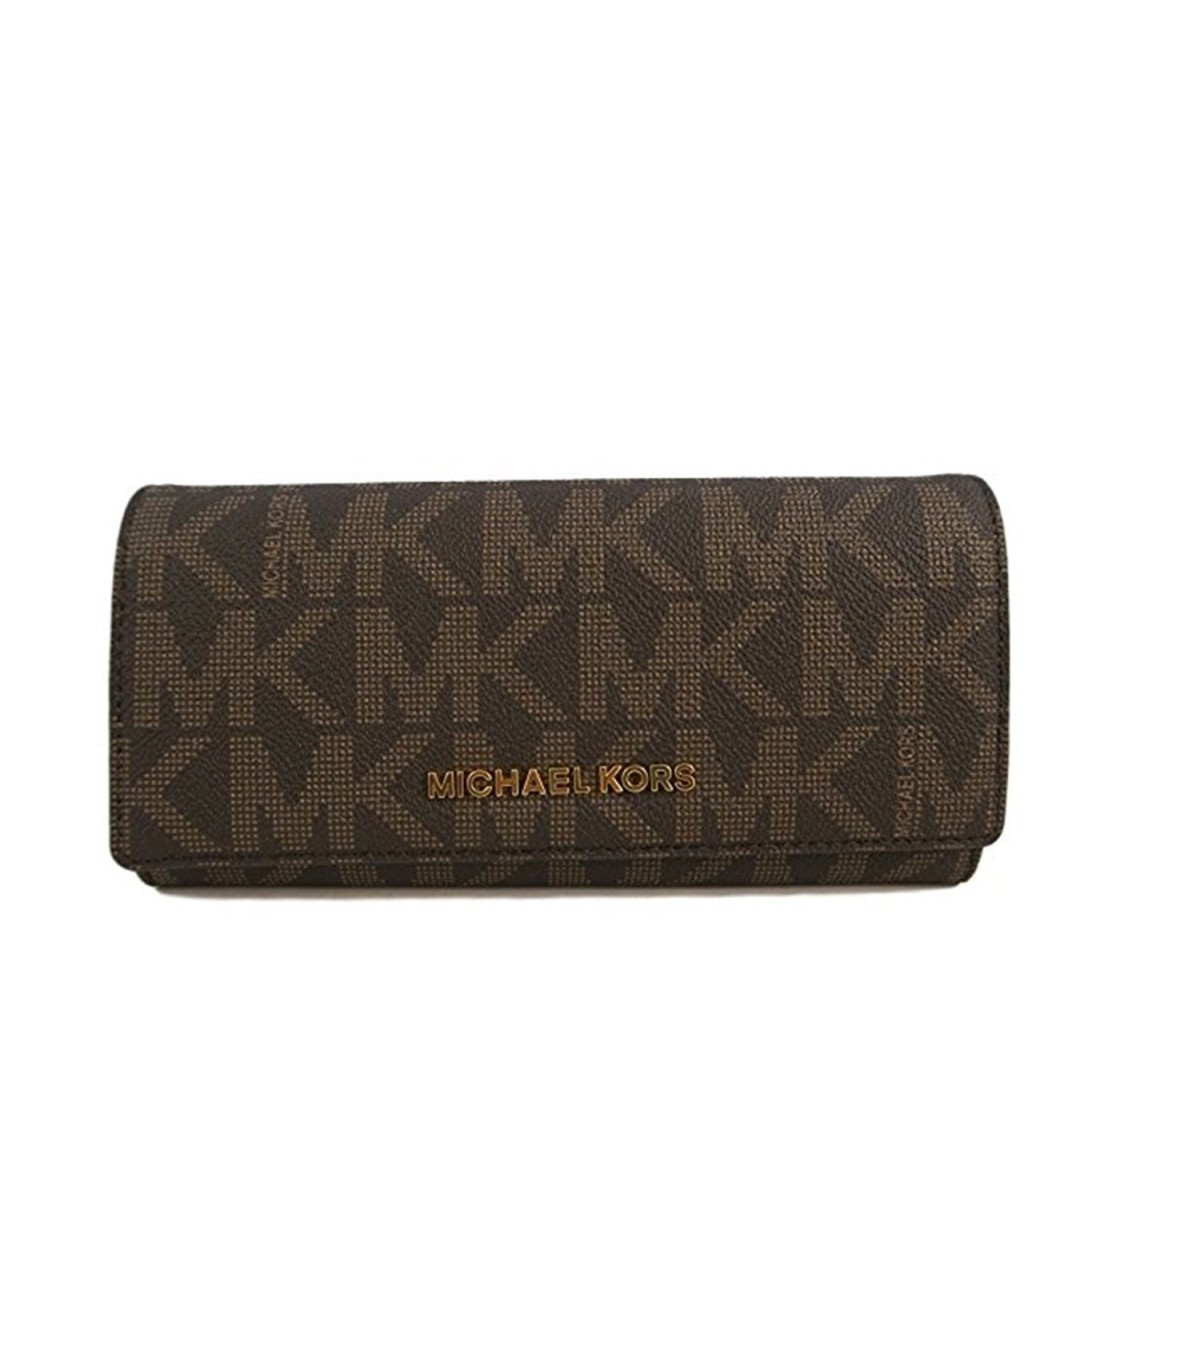 MK clutch wallet